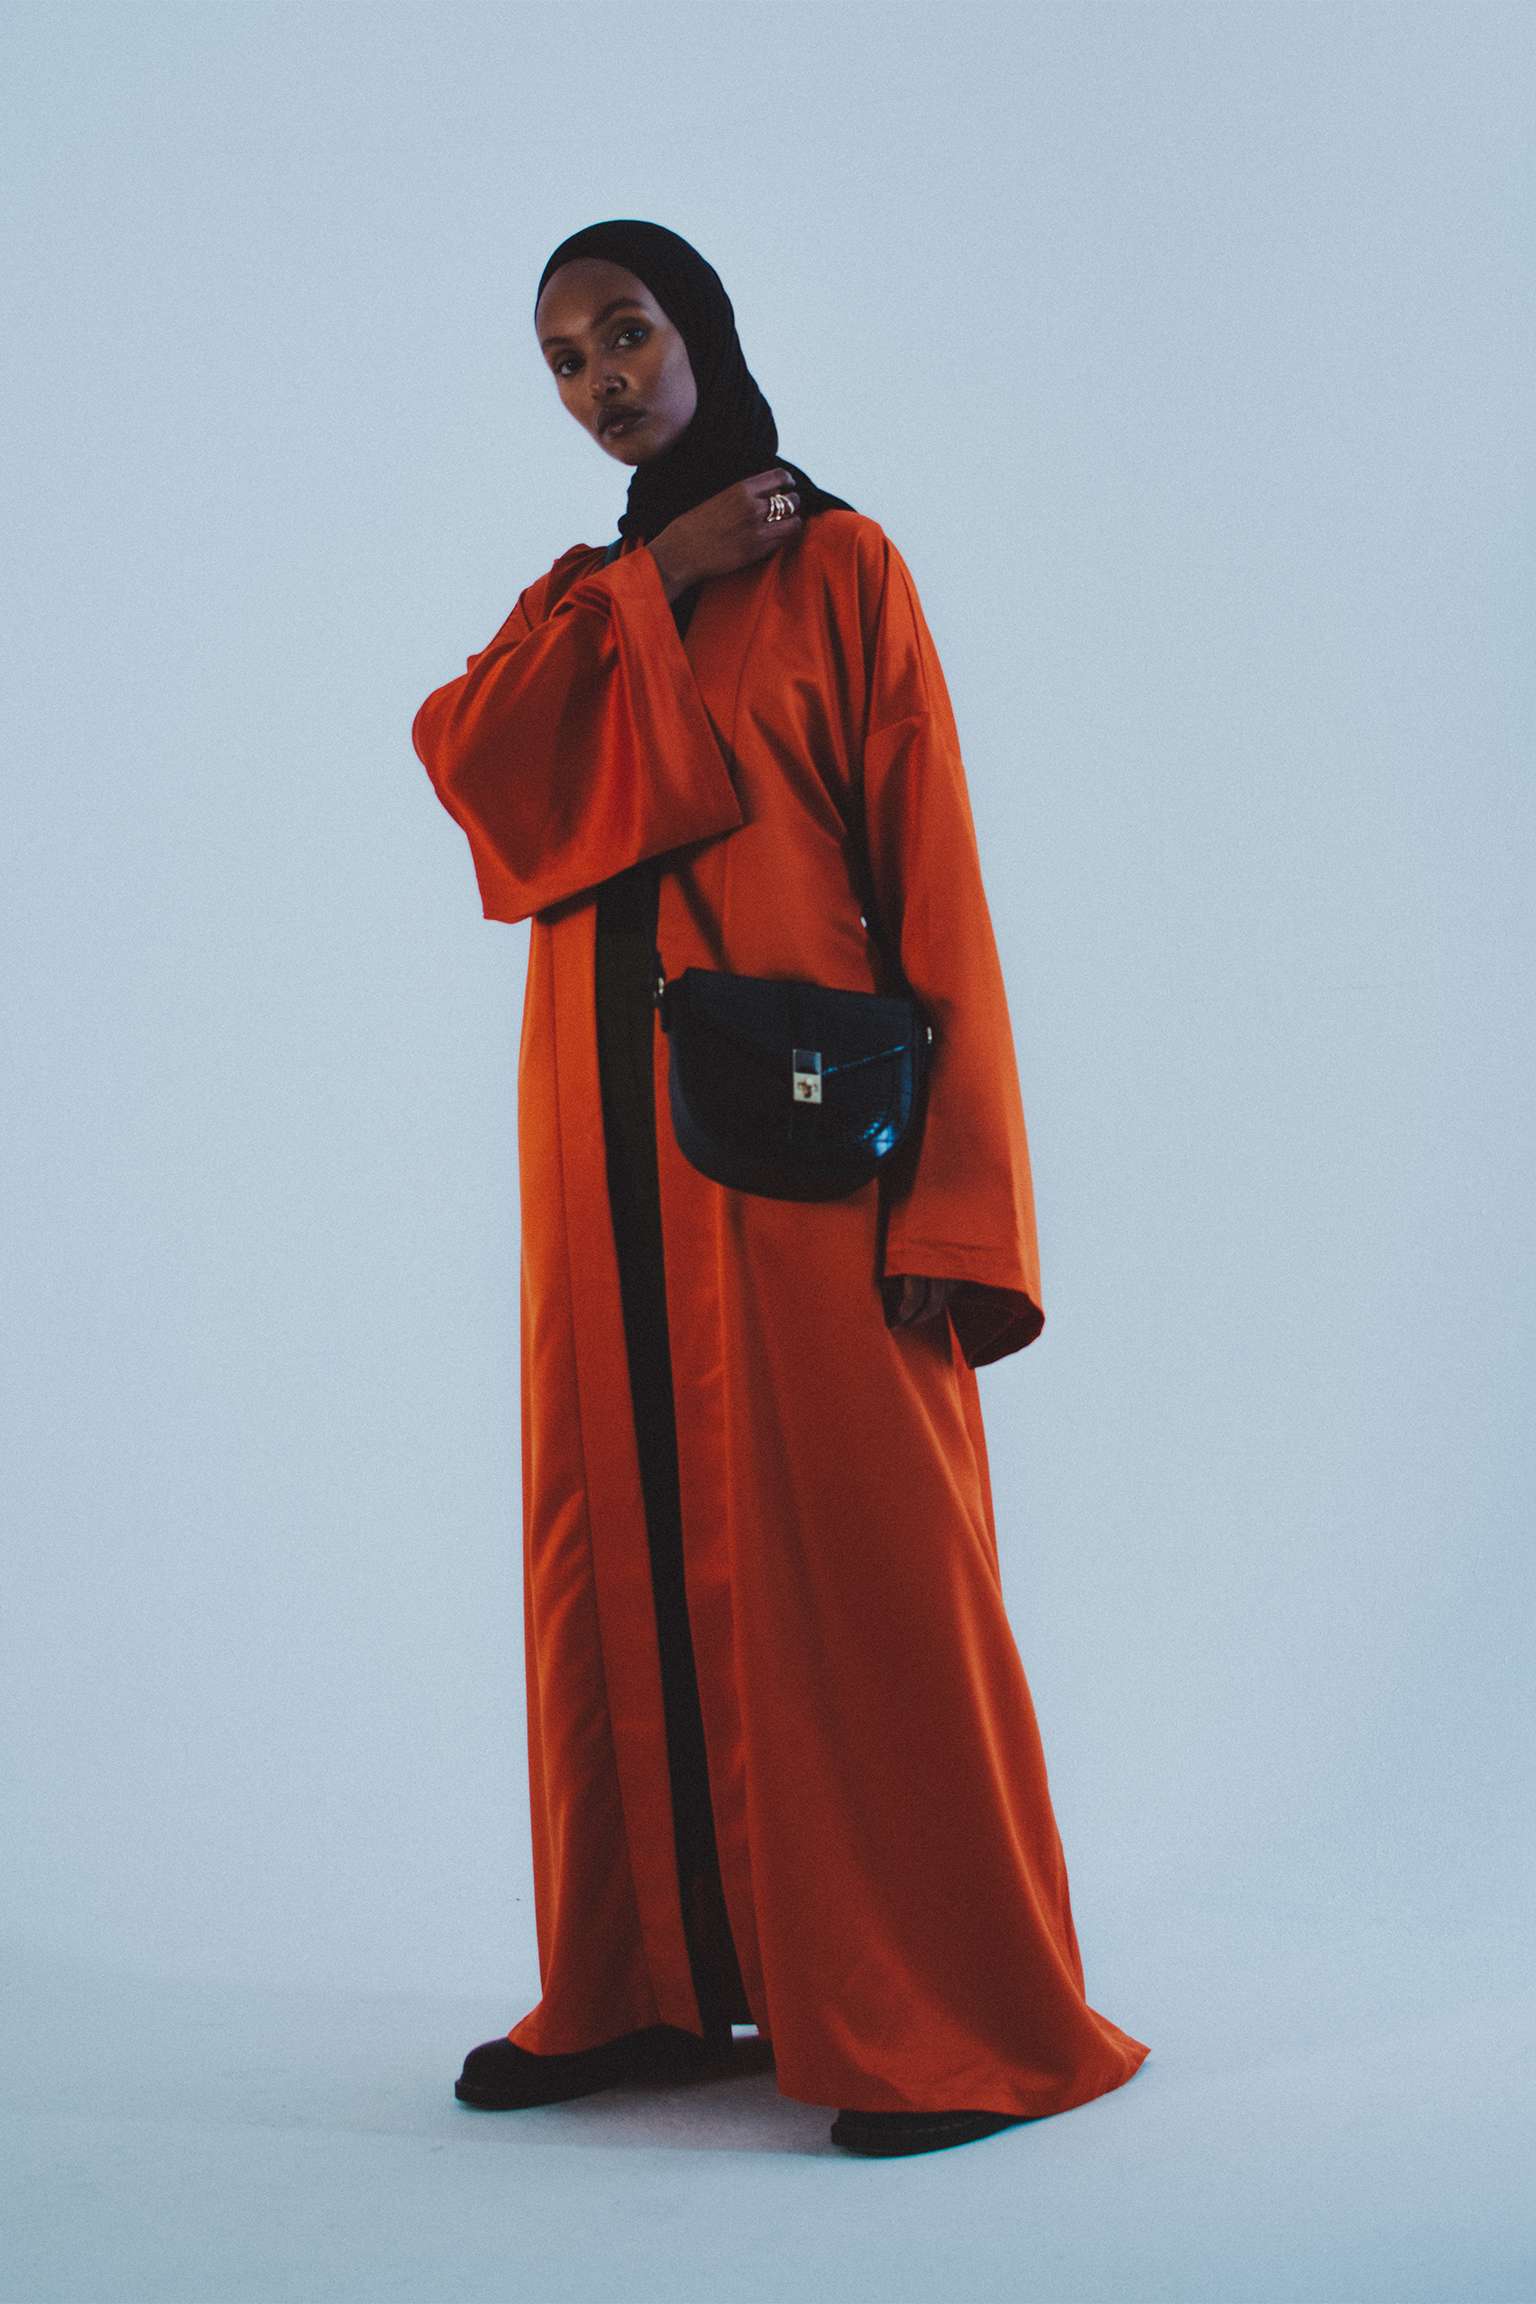 Ziama-High Fashion-Couture-Handbag-Handtasche